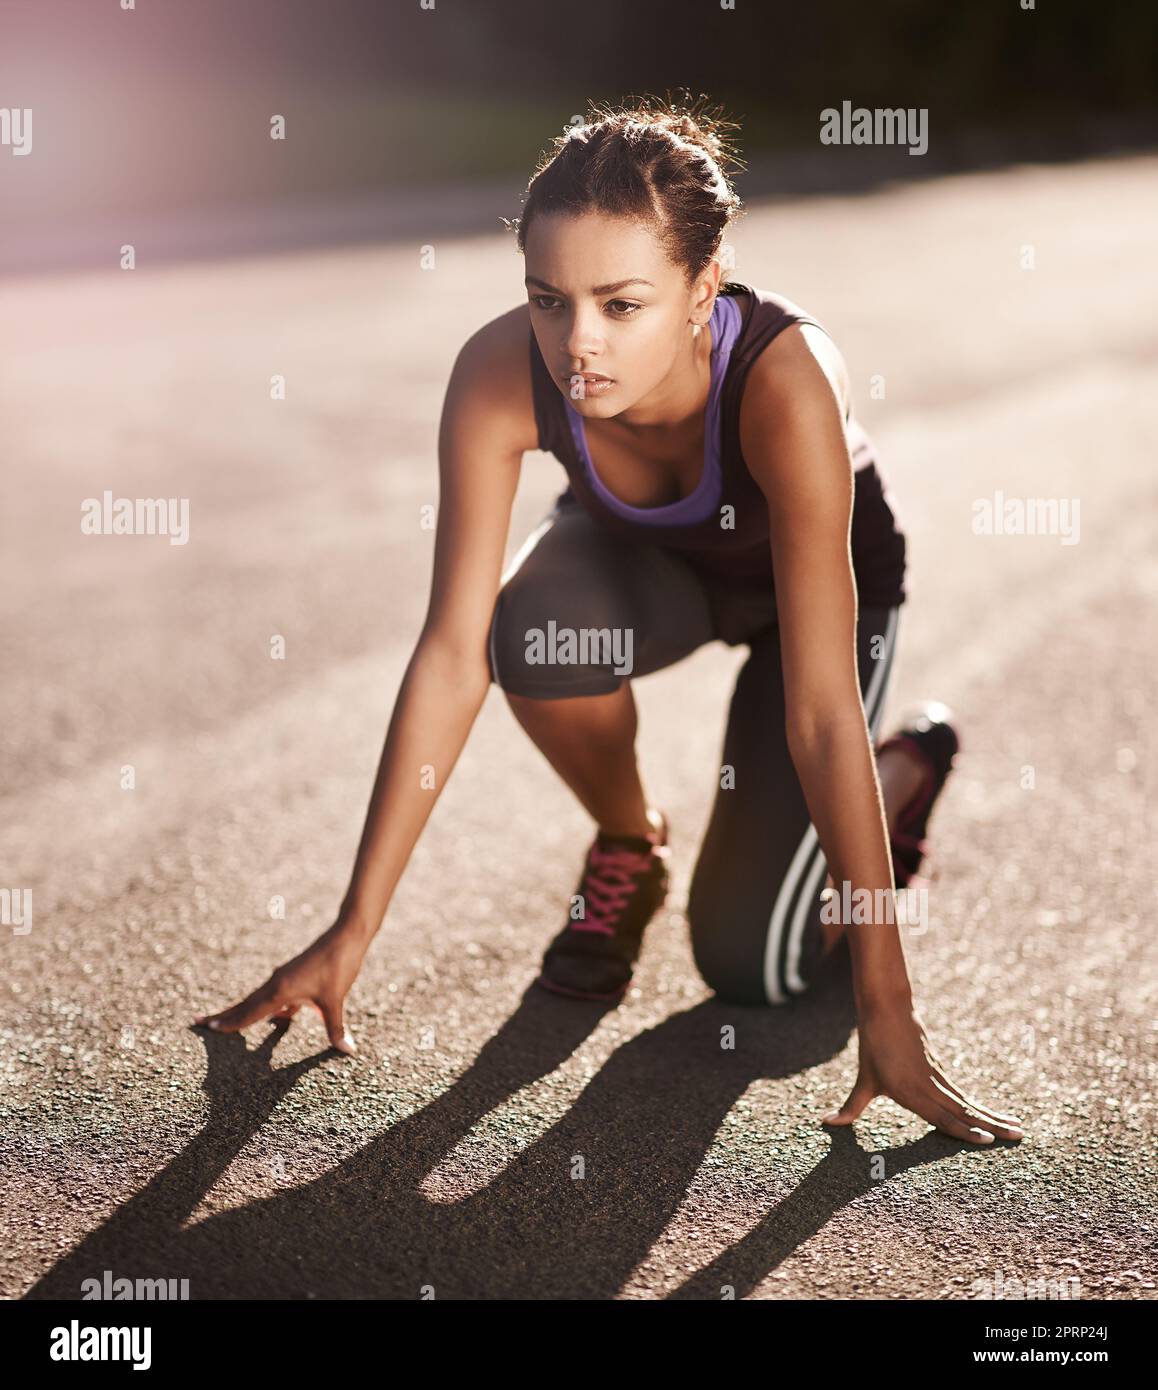 Fitness ist ein Lebensstil ohne Ziellinie. Eine junge Frau in der Startposition für einen Lauf. Stockfoto